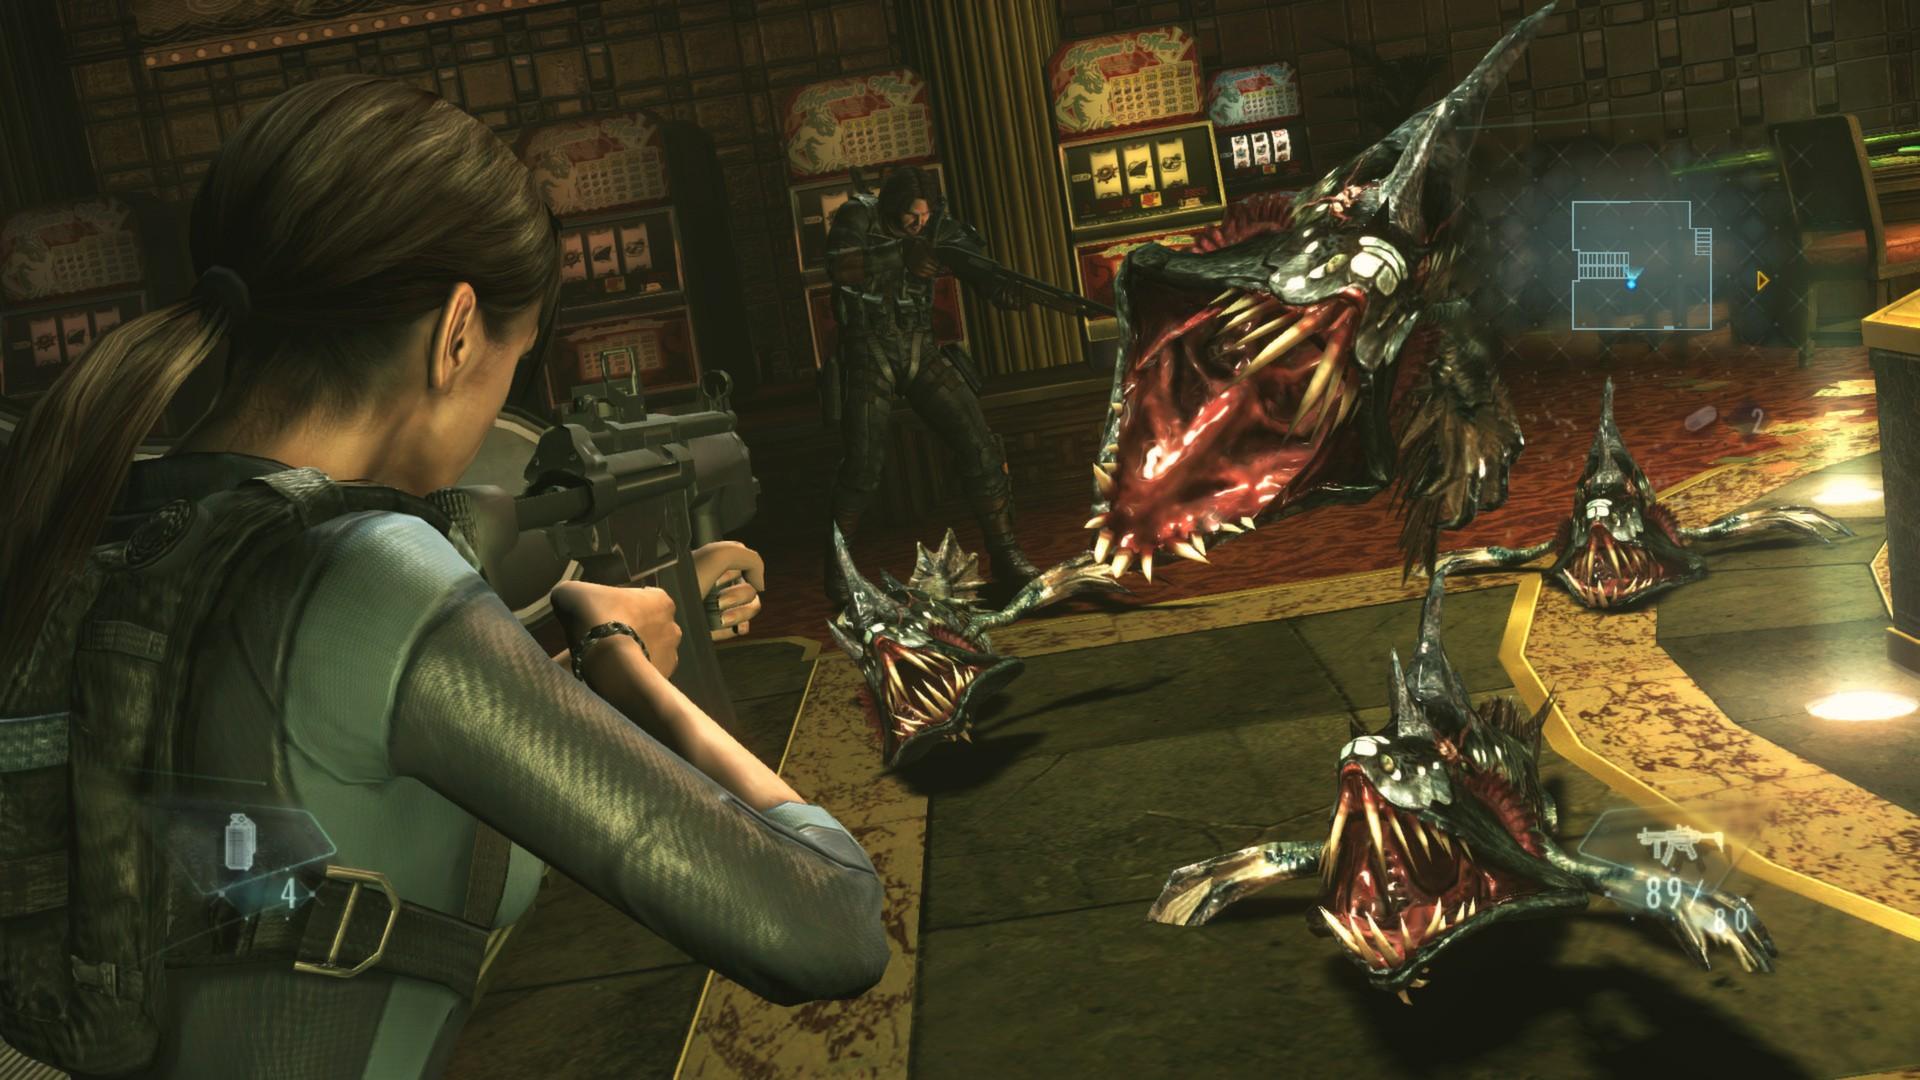 Screenshot №11 from game Resident Evil Revelations